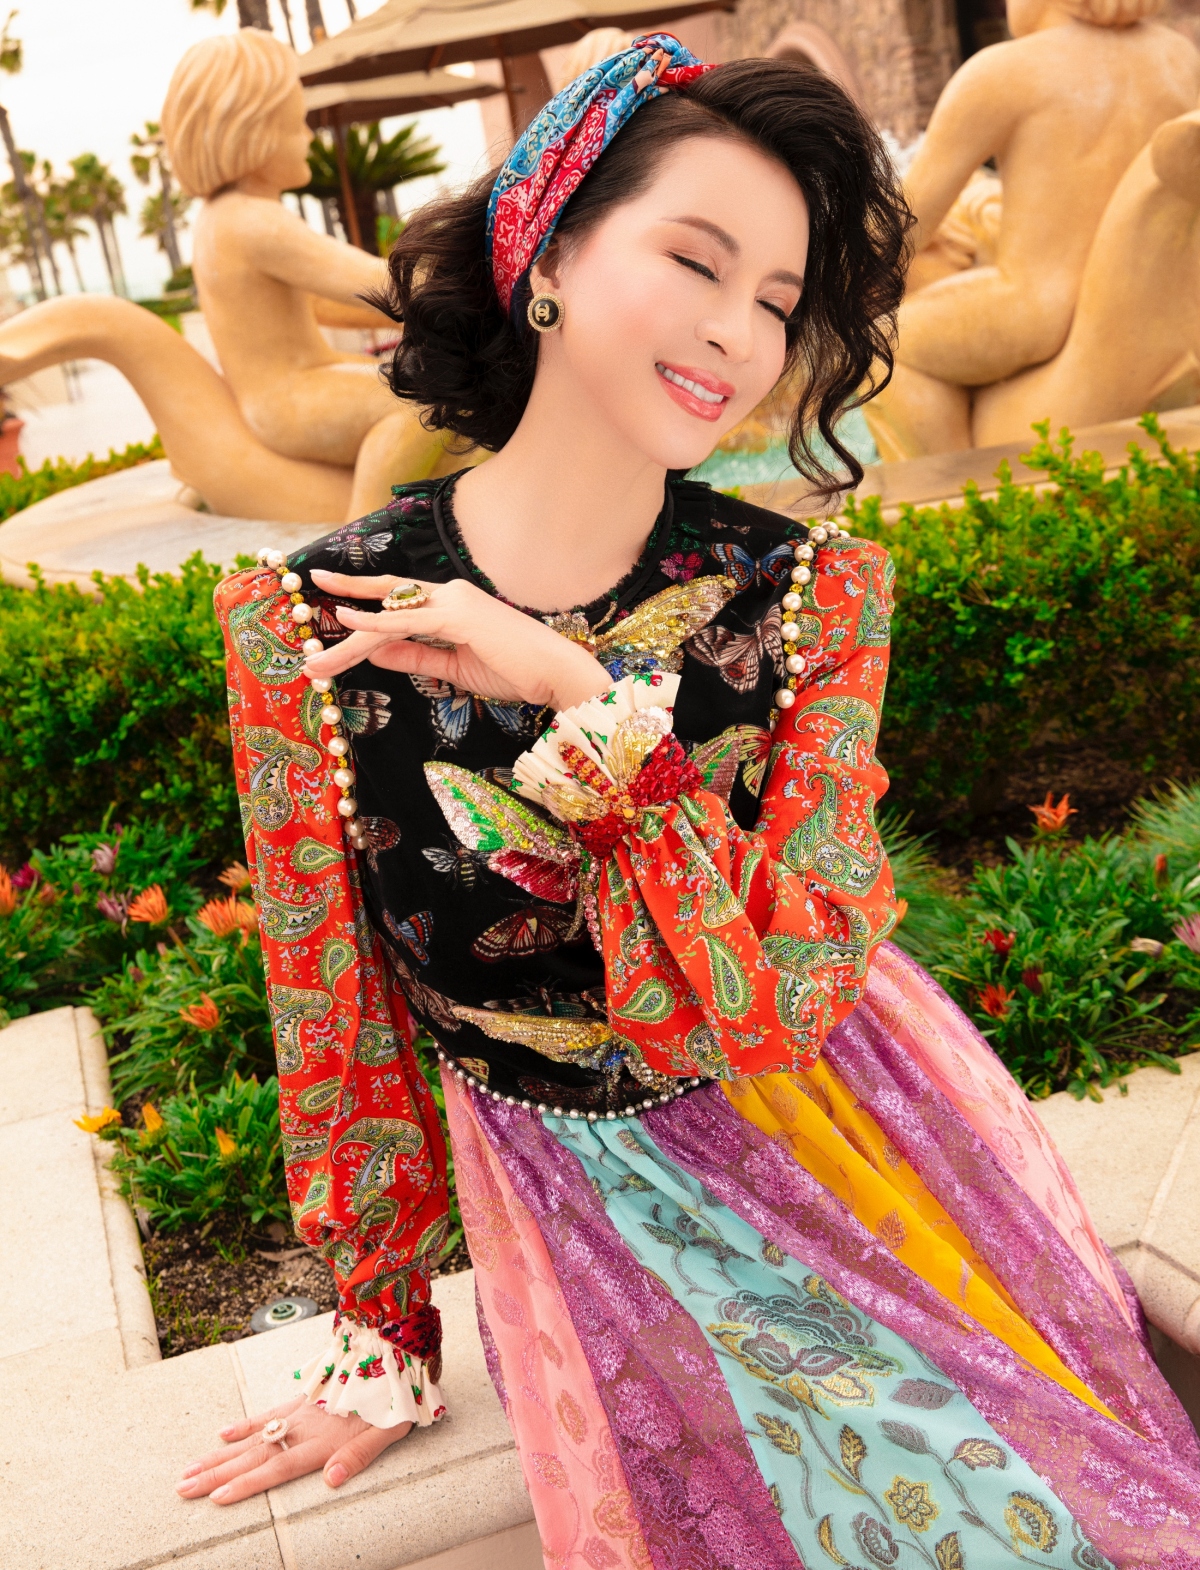 Mẫu váy có họa tiết được tạo nên bằng kỹ thuật đính kết thủ công được MC Thanh Mai đặc biệt yêu thích. Bên cạnh đó, đầm xoè tạo cảm giác bay bổng, cắt may trên vải in nhiều sắc màu nổi bật.